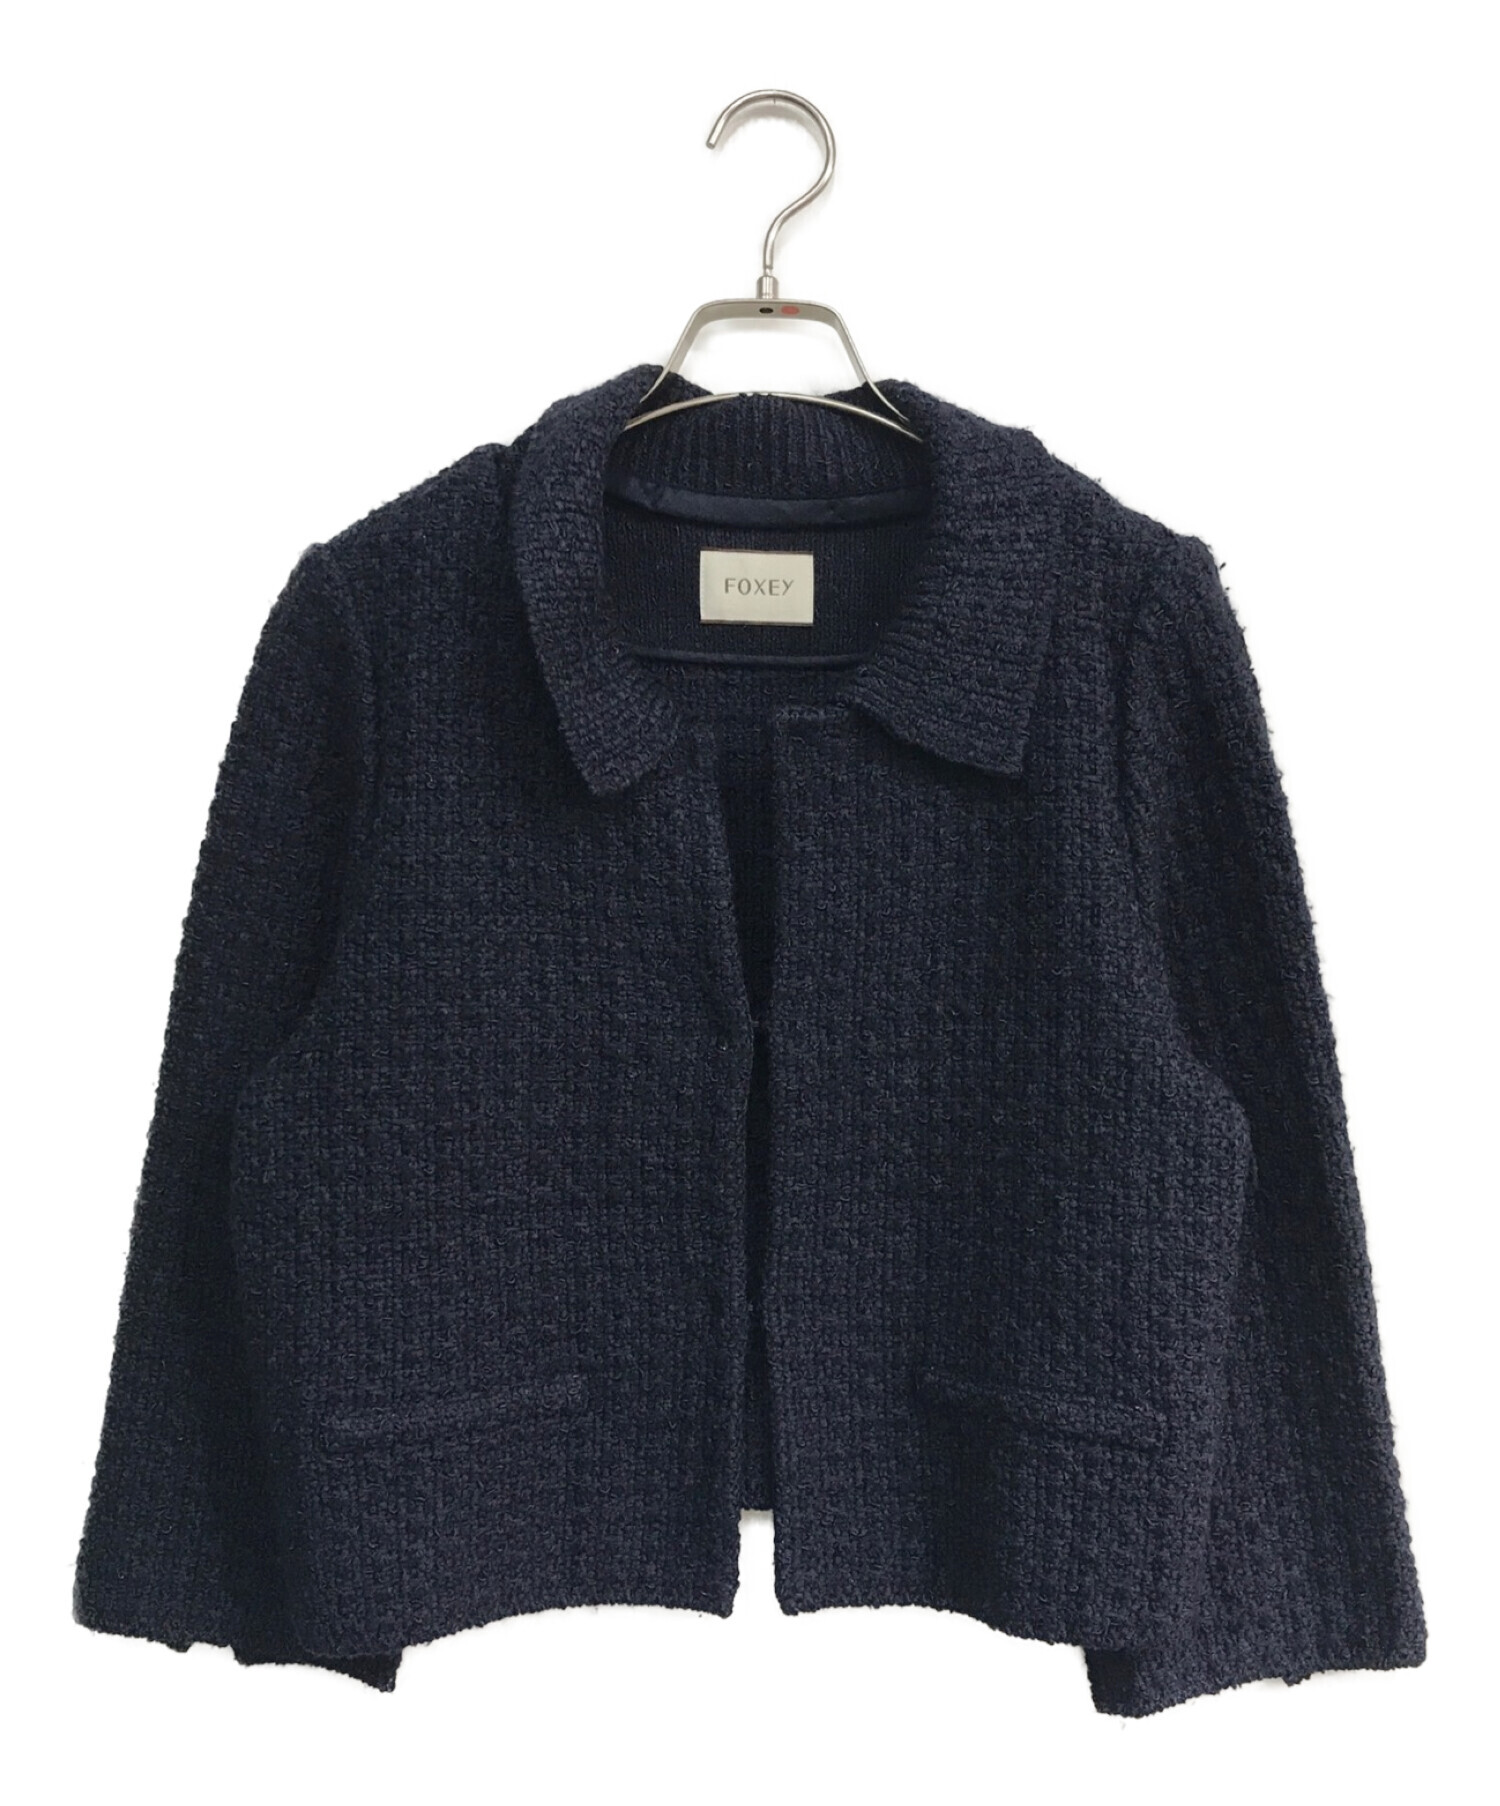 定価121000円foxey tweed compact jacket